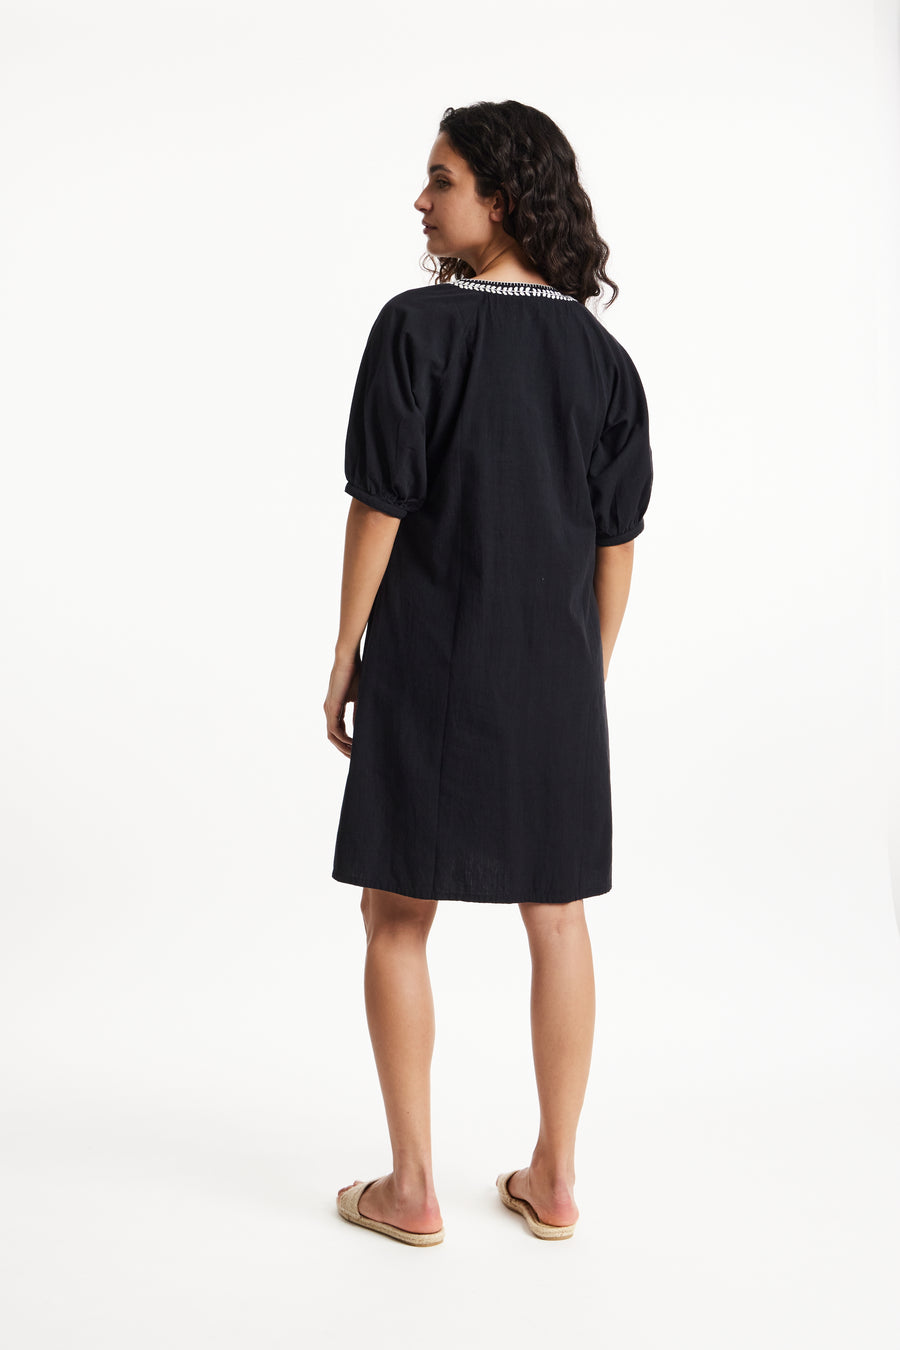 People Tree Fairer Handel, ethisches und nachhaltiges PIA gesticktes Kleid in schwarzer 100% Bio -Baumwolle